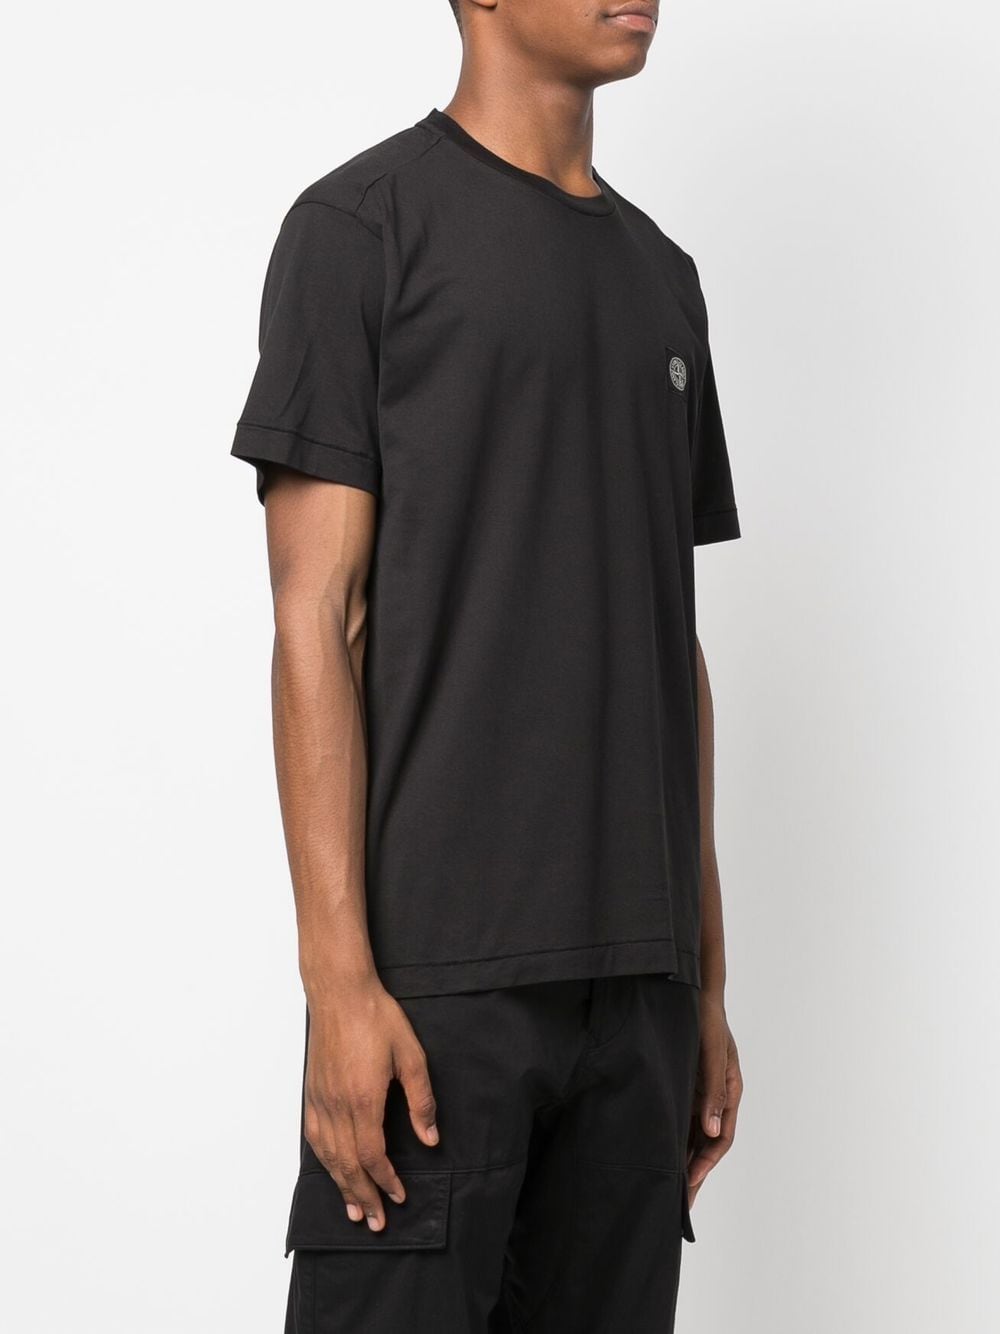 Stone Island T-shirt noir en coton à motif compass - Lothaire boutiques